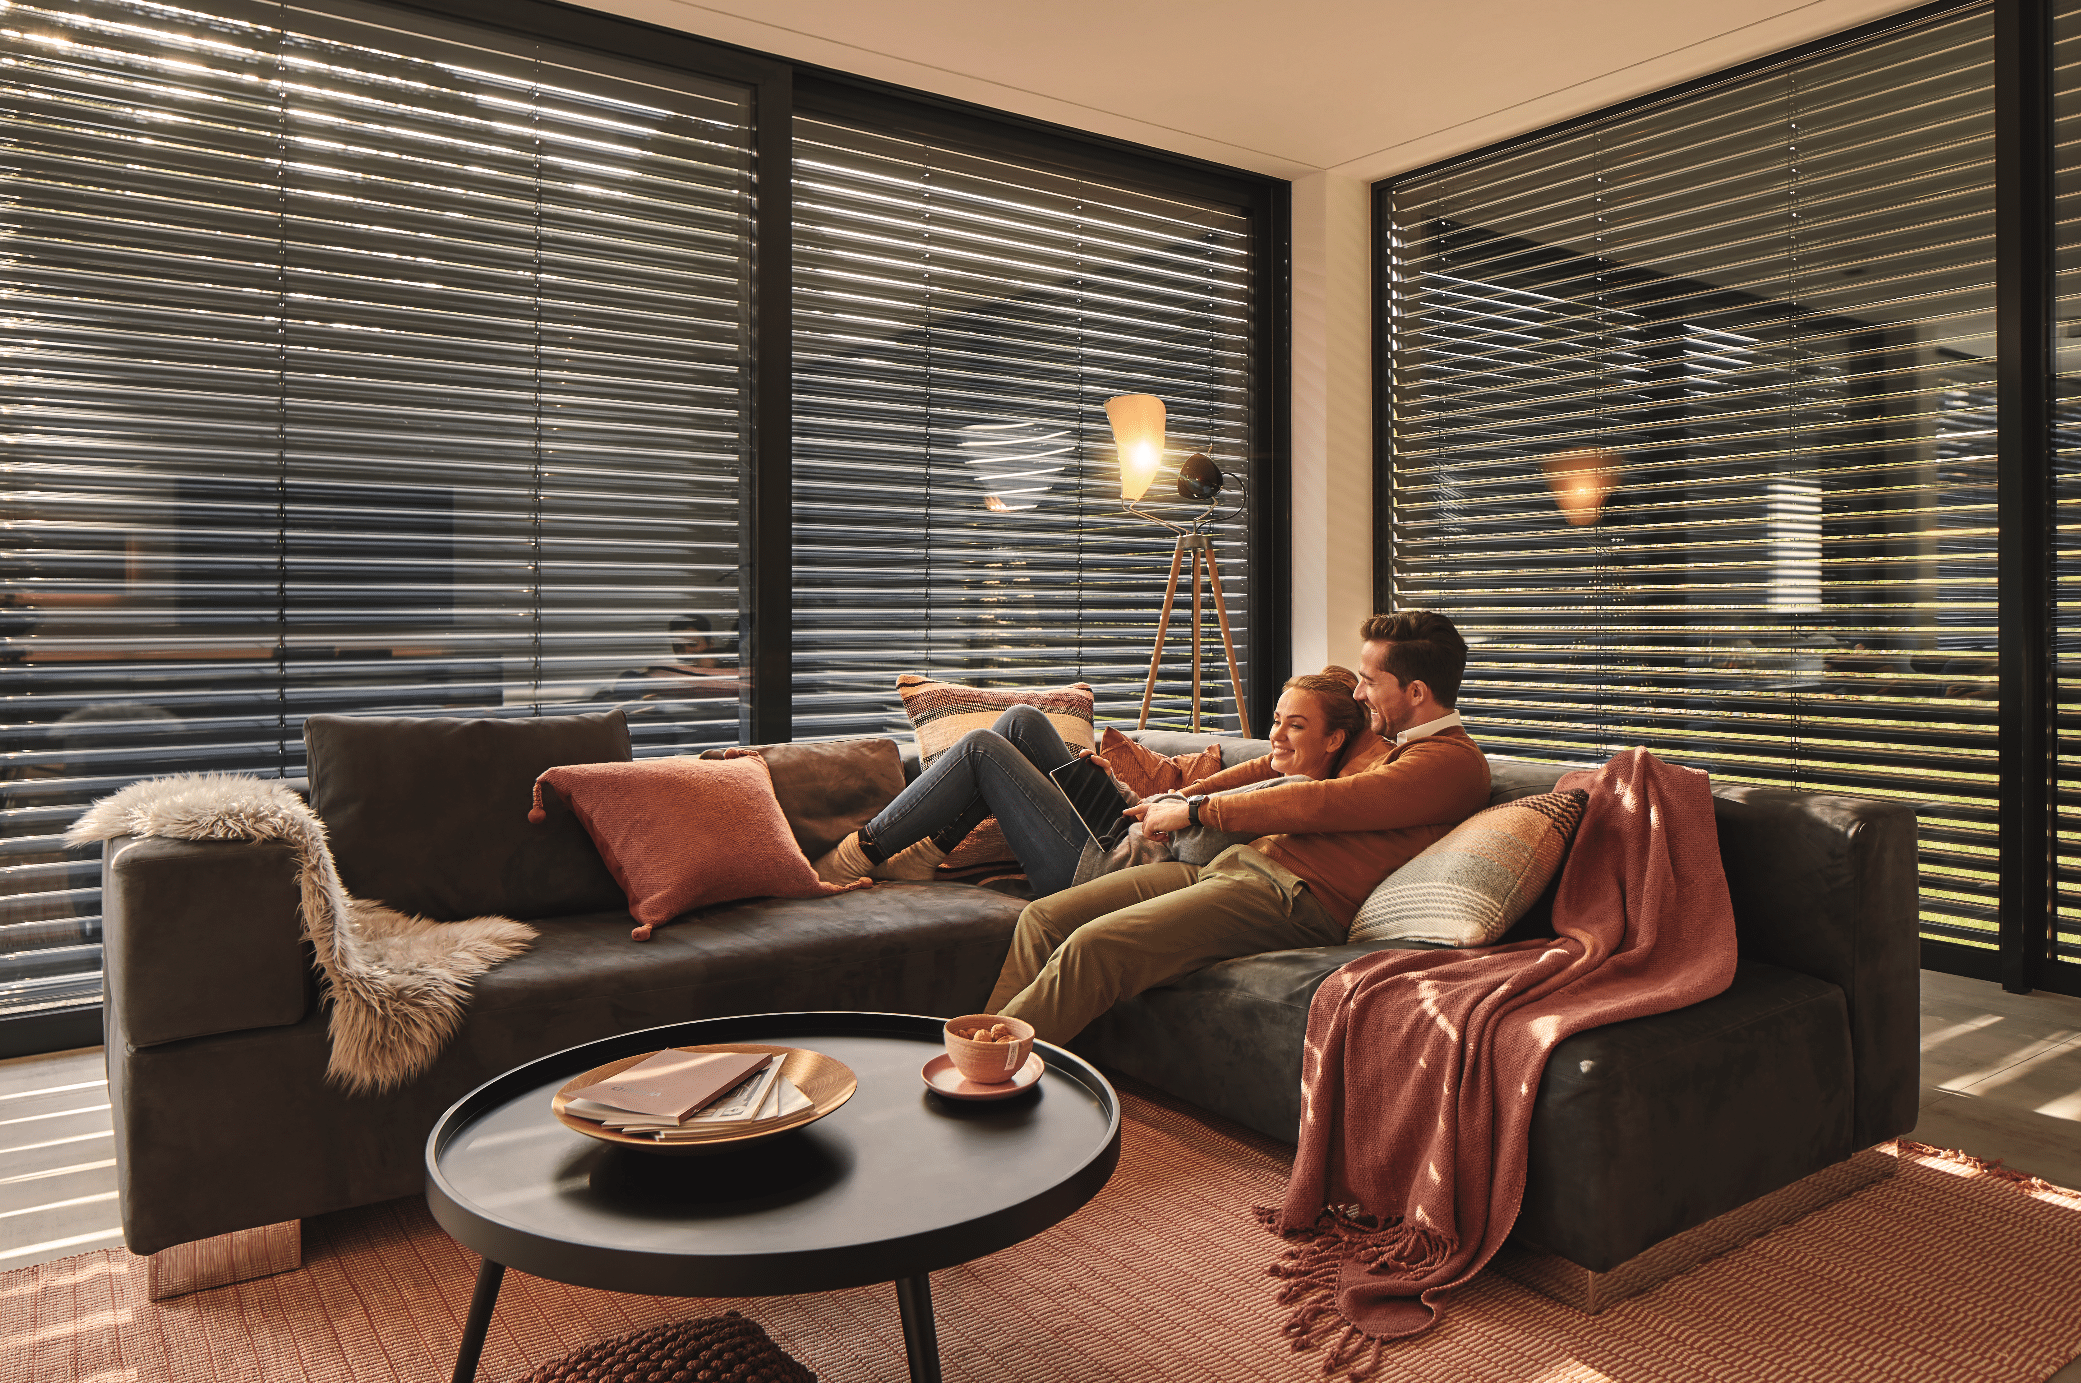 WAREMA zeigt ein mit Jalousien abgedunkeltes Wohnzimmer, eine braune Couch mit verschiedenen Polstern und einem runden Beistelltisch aus Holz.